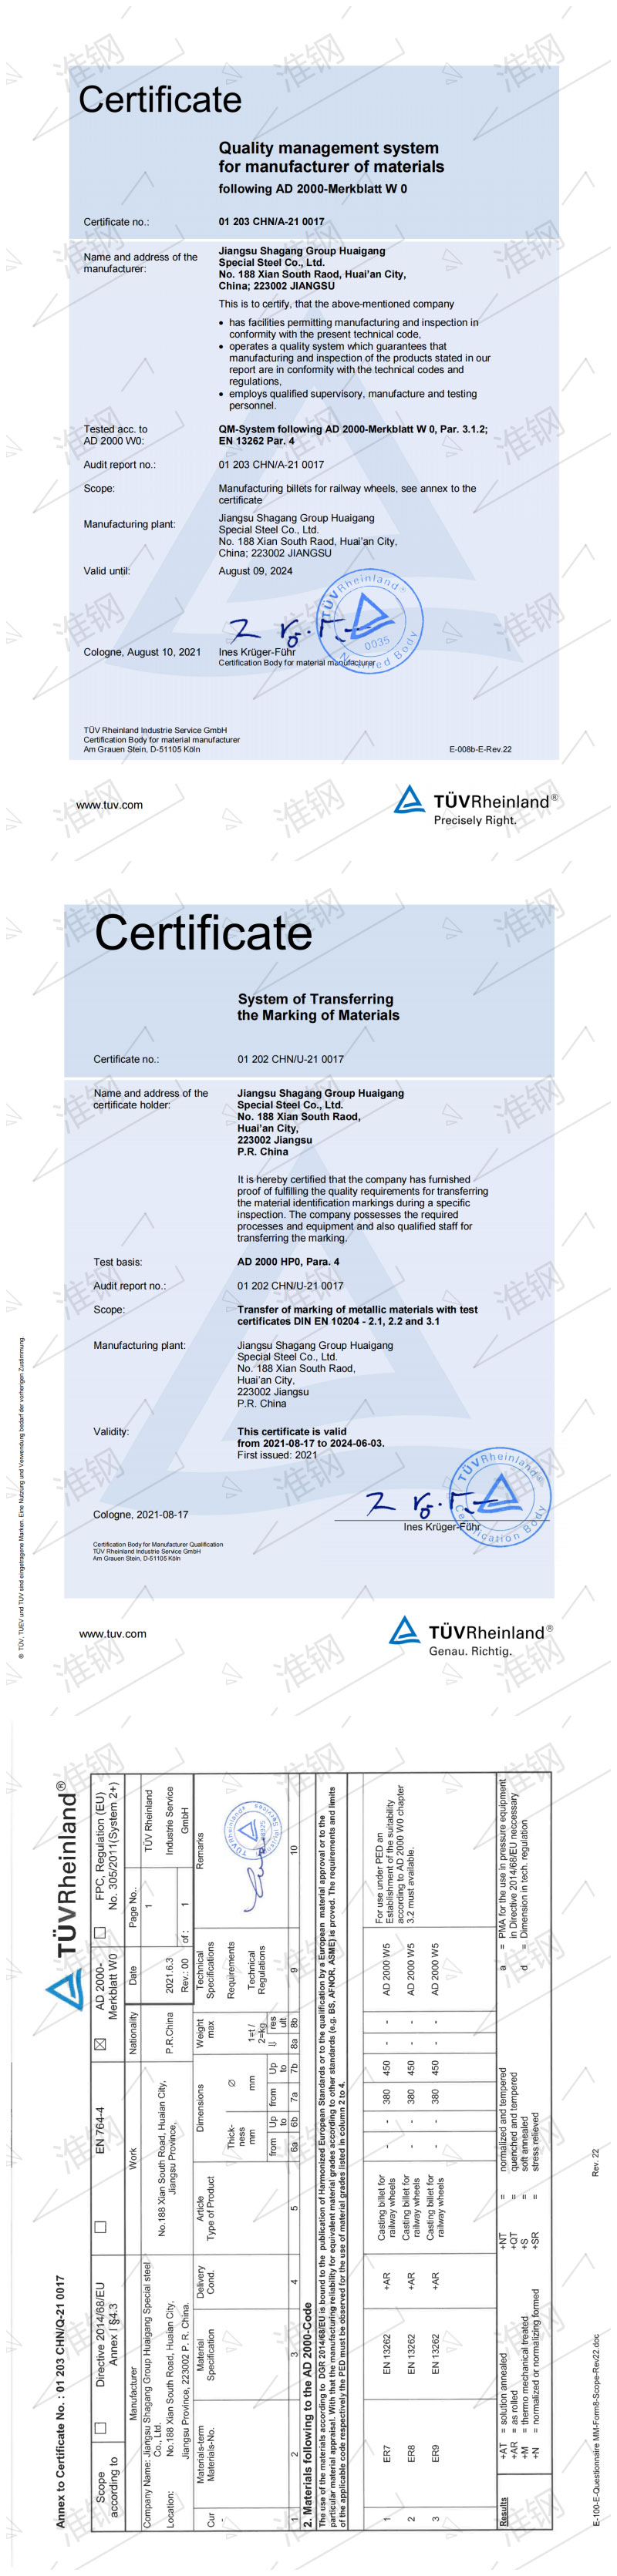 车轮钢坯ER系列-德国莱茵公司（TUV）认证证书